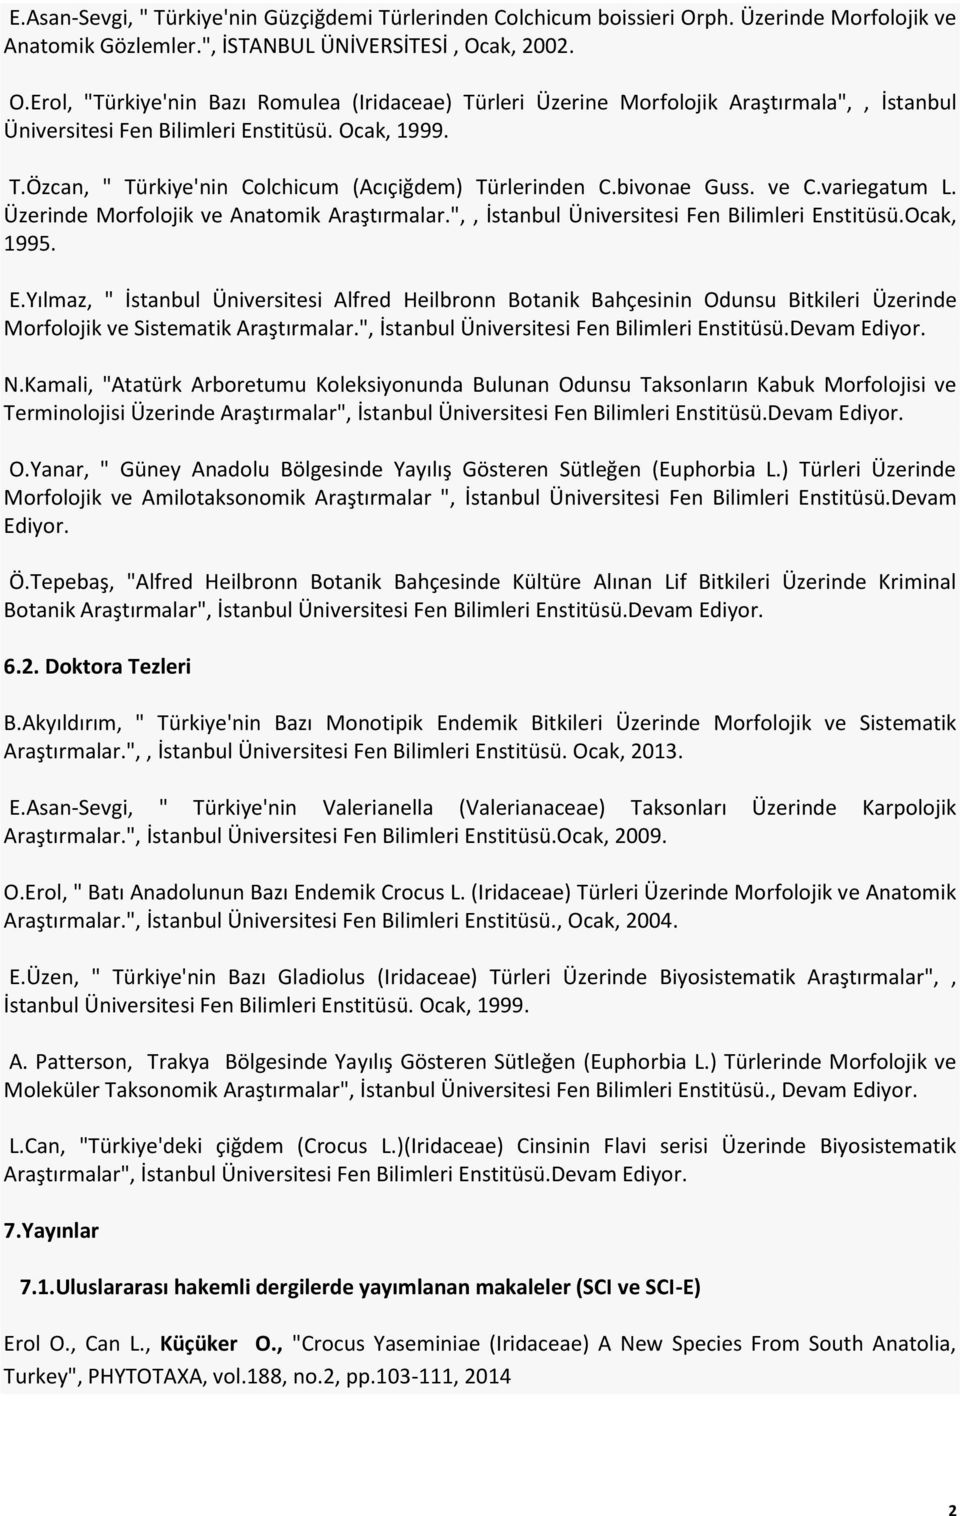 ak, 2002. O.Erol, "Türkiye'nin Bazı Romulea (Iridaceae) Türleri Üzerine Morfolojik Araştırmala",, İstanbul Üniversitesi Fen Bilimleri Enstitüsü. Ocak, 1999. T.Özcan, " Türkiye'nin Colchicum (Acıçiğdem) Türlerinden C.